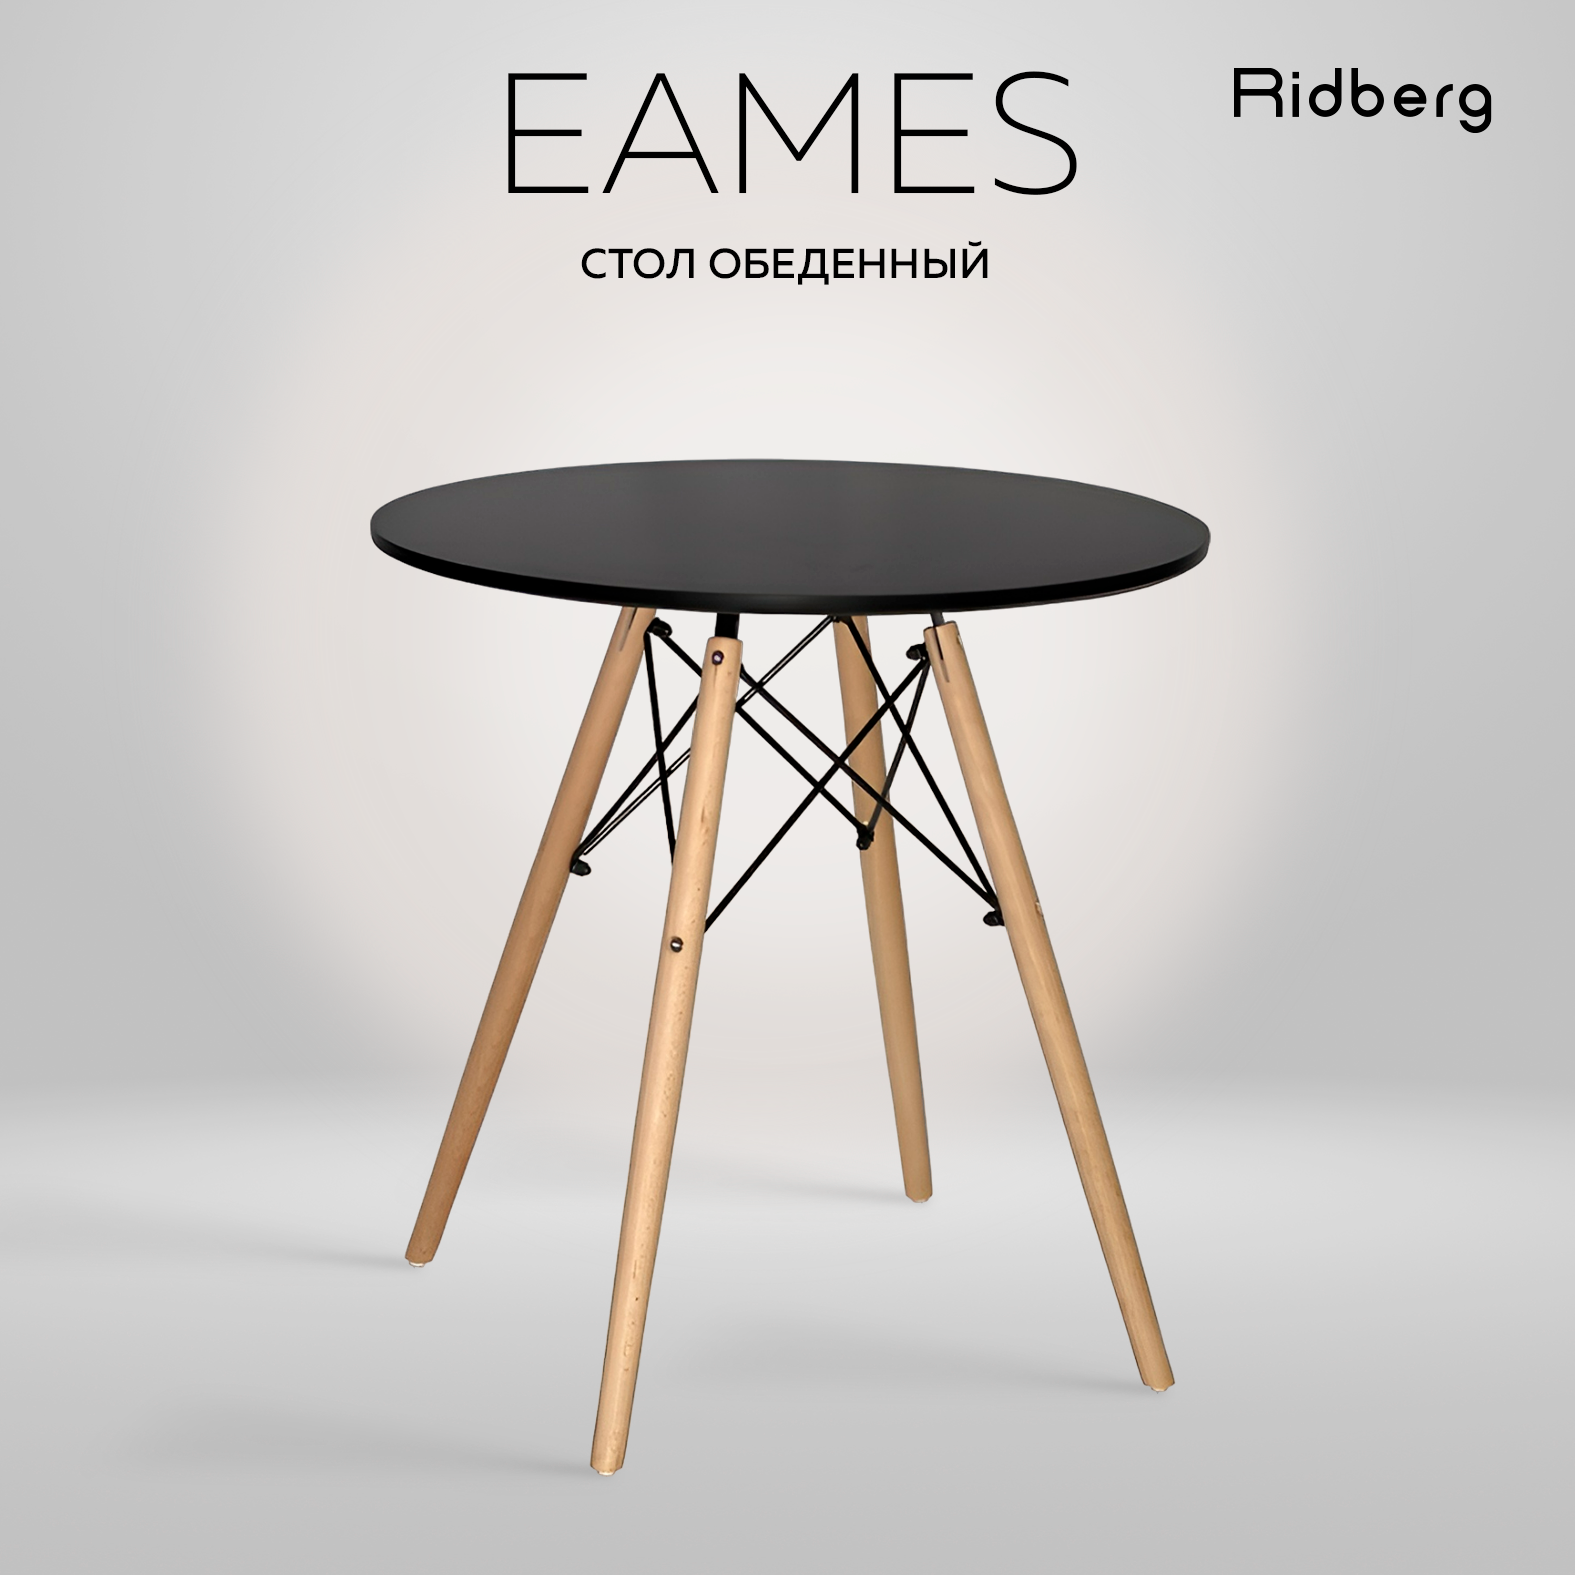 Стол обеденный круглый кухонный RIDBERG DSW EAMES 70x73 см, черный. Стол для кухни